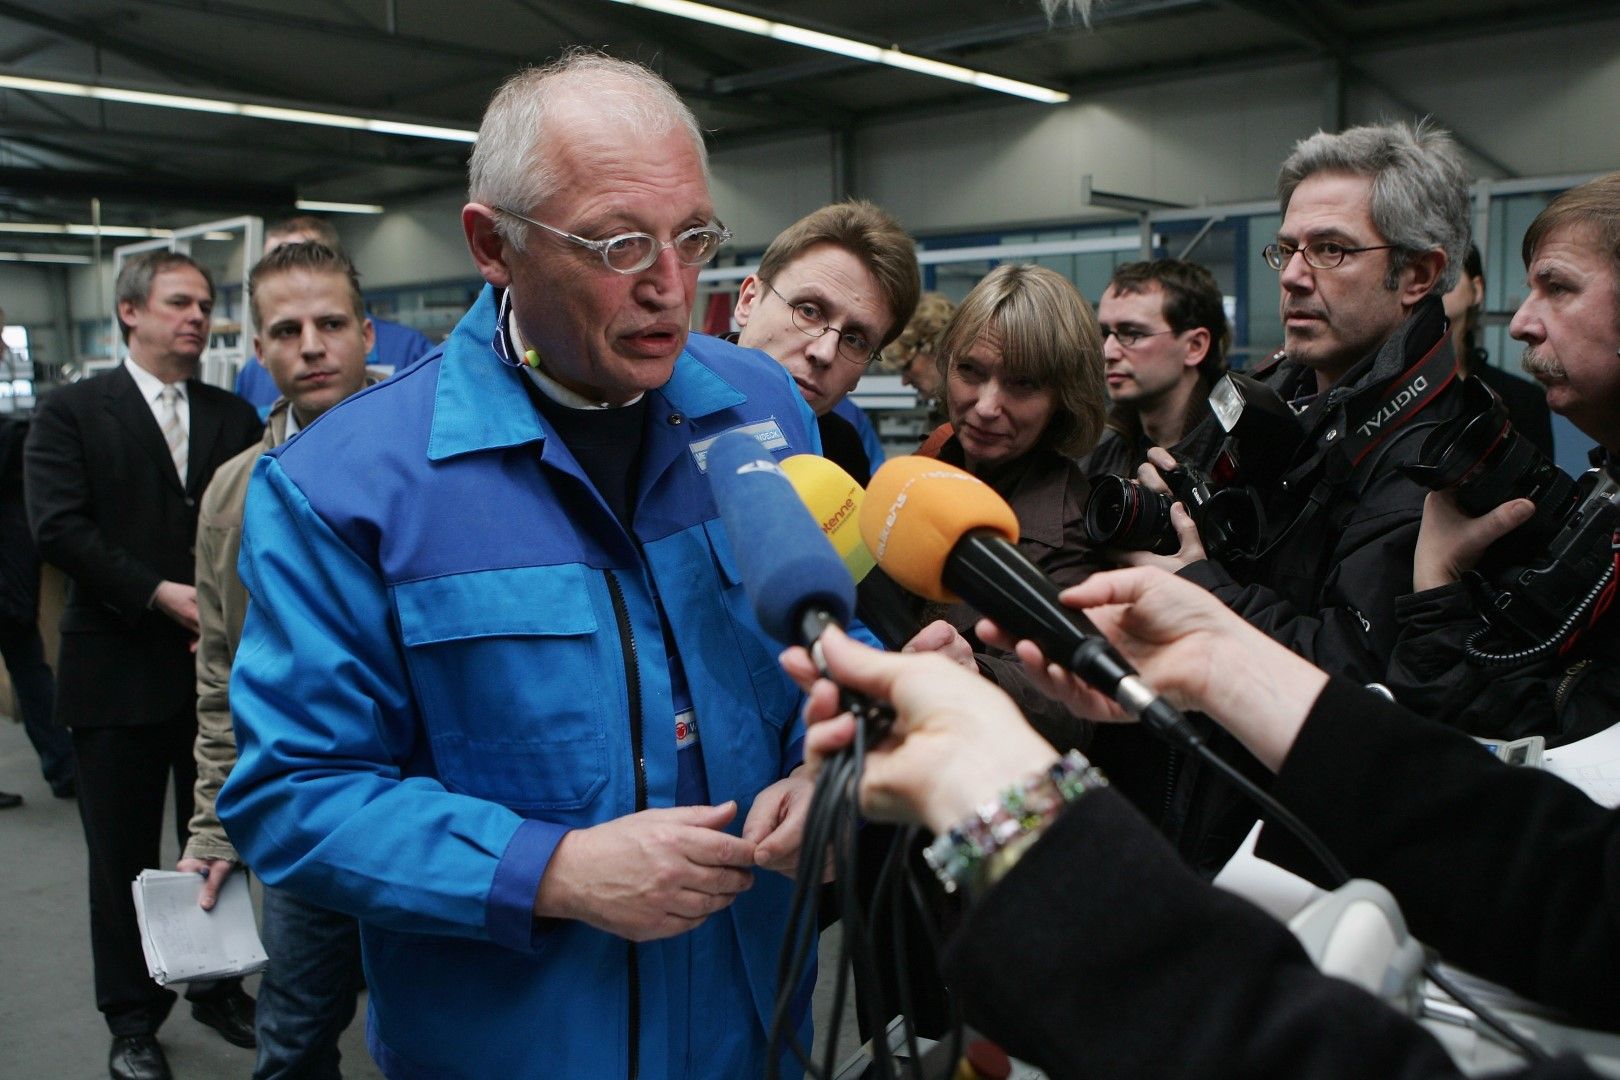 Гюнтер Ферхойген говори пред журналисти при посещението си в металообработваща фабрика в Германия като еврокомисар по индустрията, 25 март 2007 г.